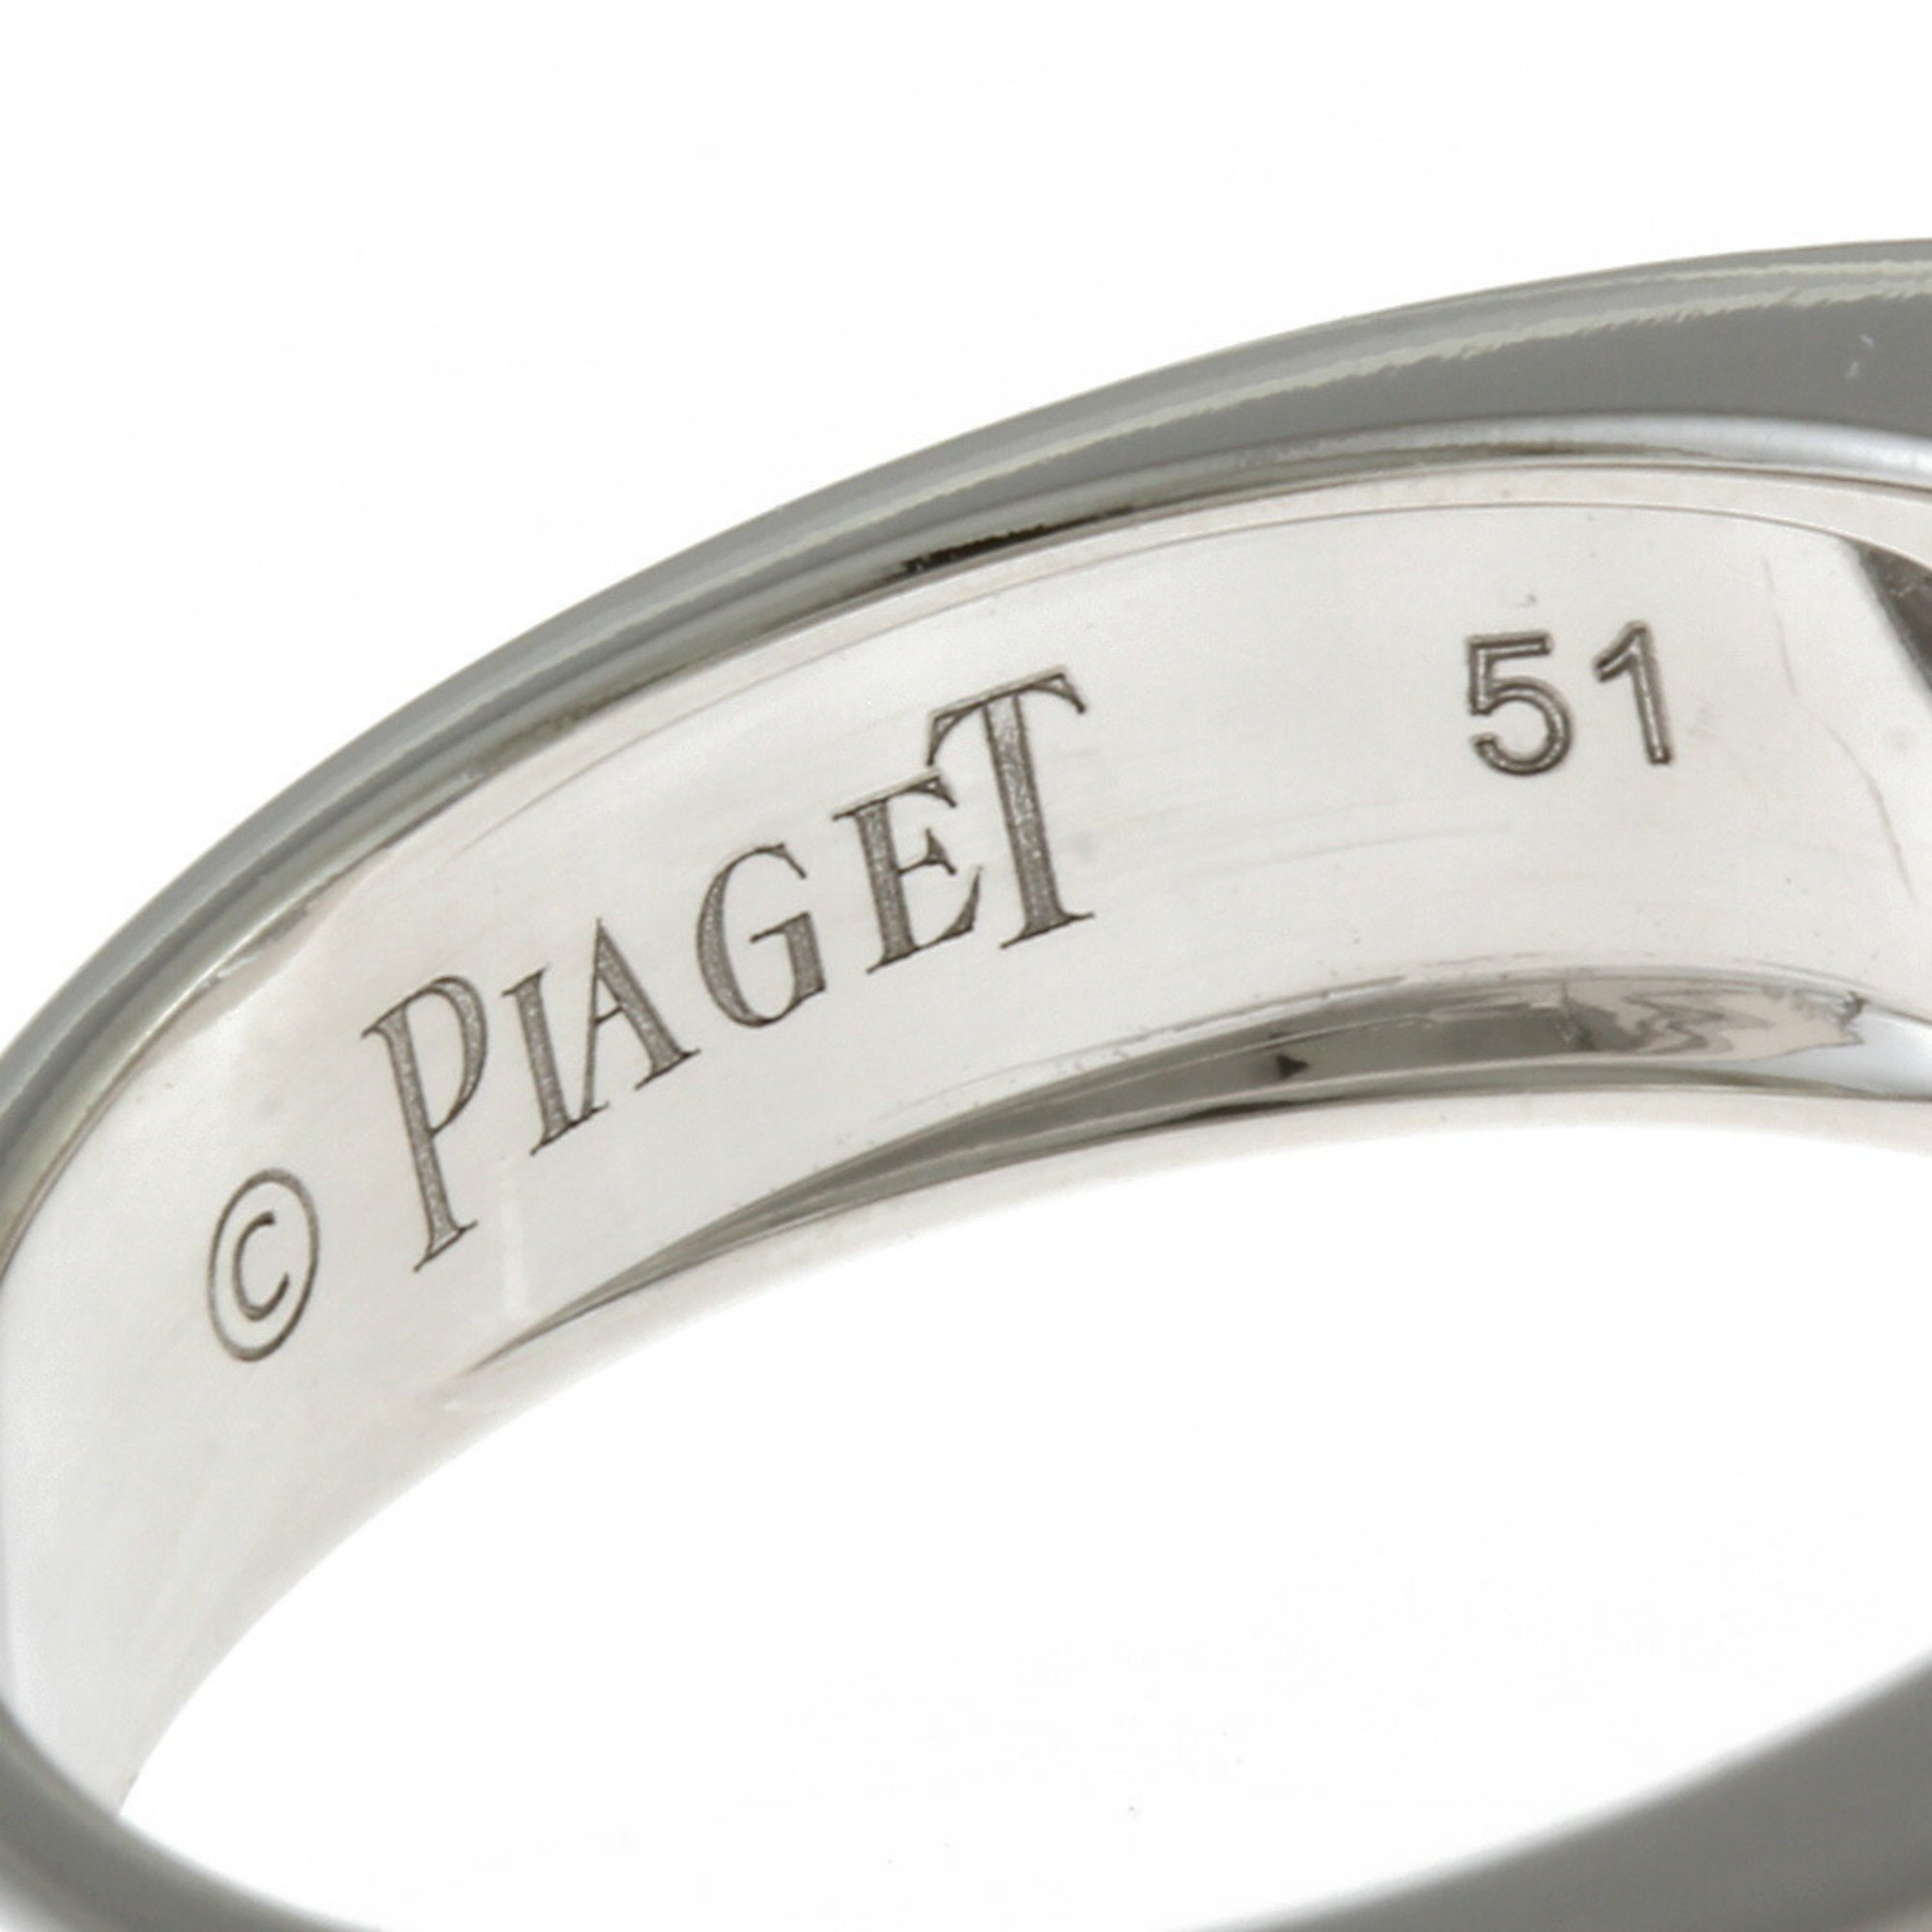 Piaget PIAGET Miss Protocol #51 Ring No. 11 18K K18 White Gold Diamond Women's